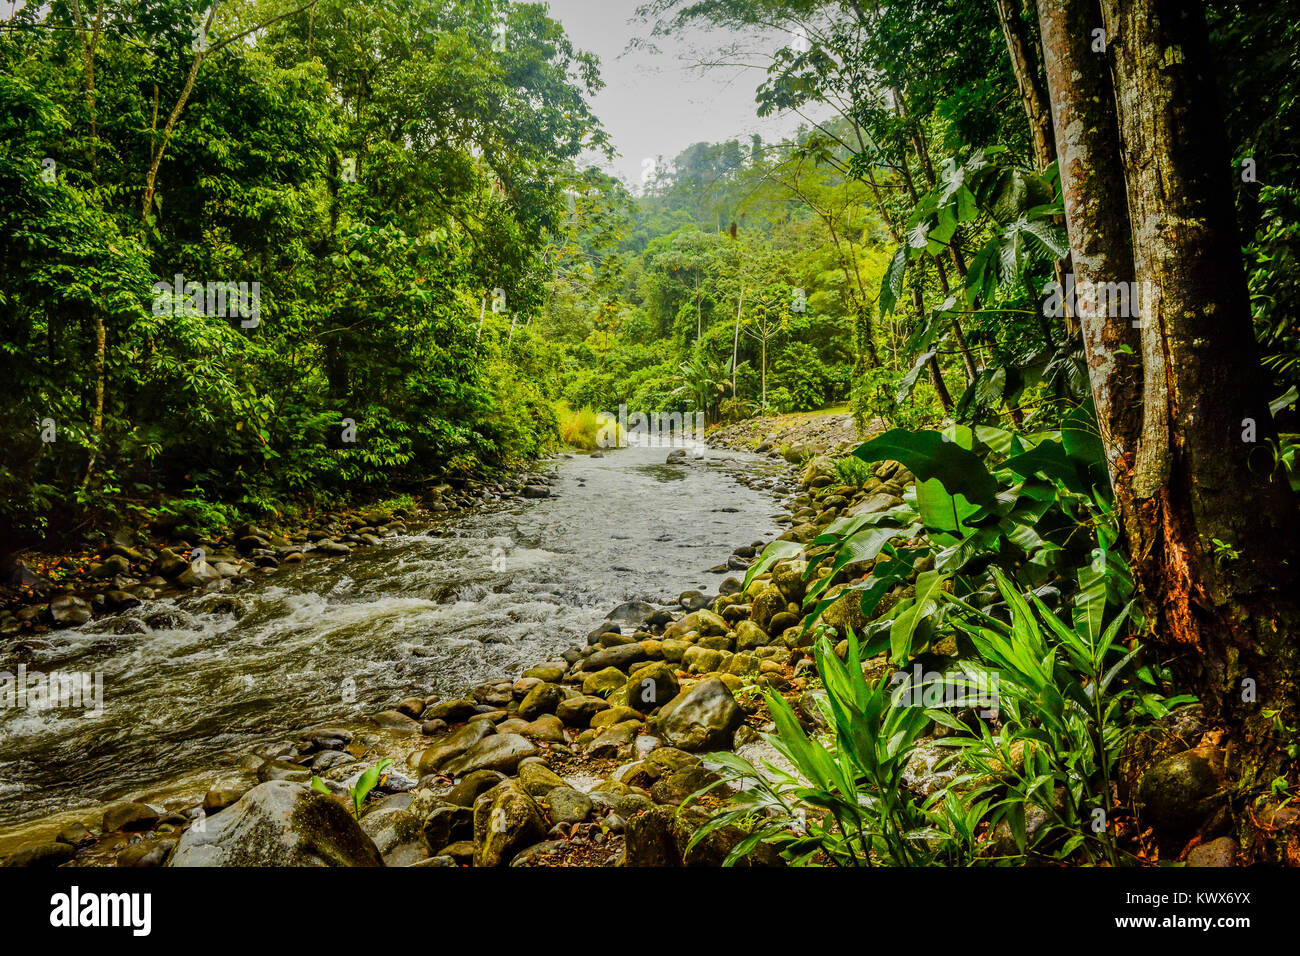 Rain Forest in Costa Rica Stock Photo